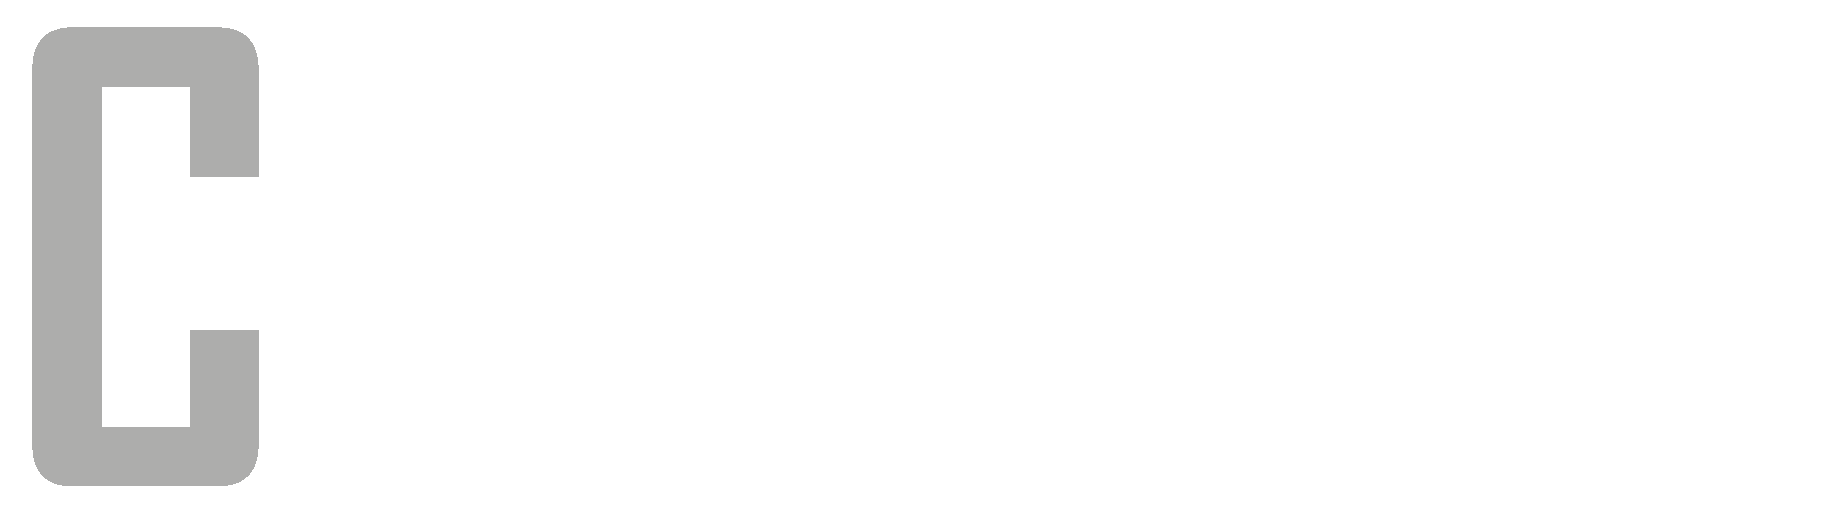 Caucasus Journal of Social Sciences